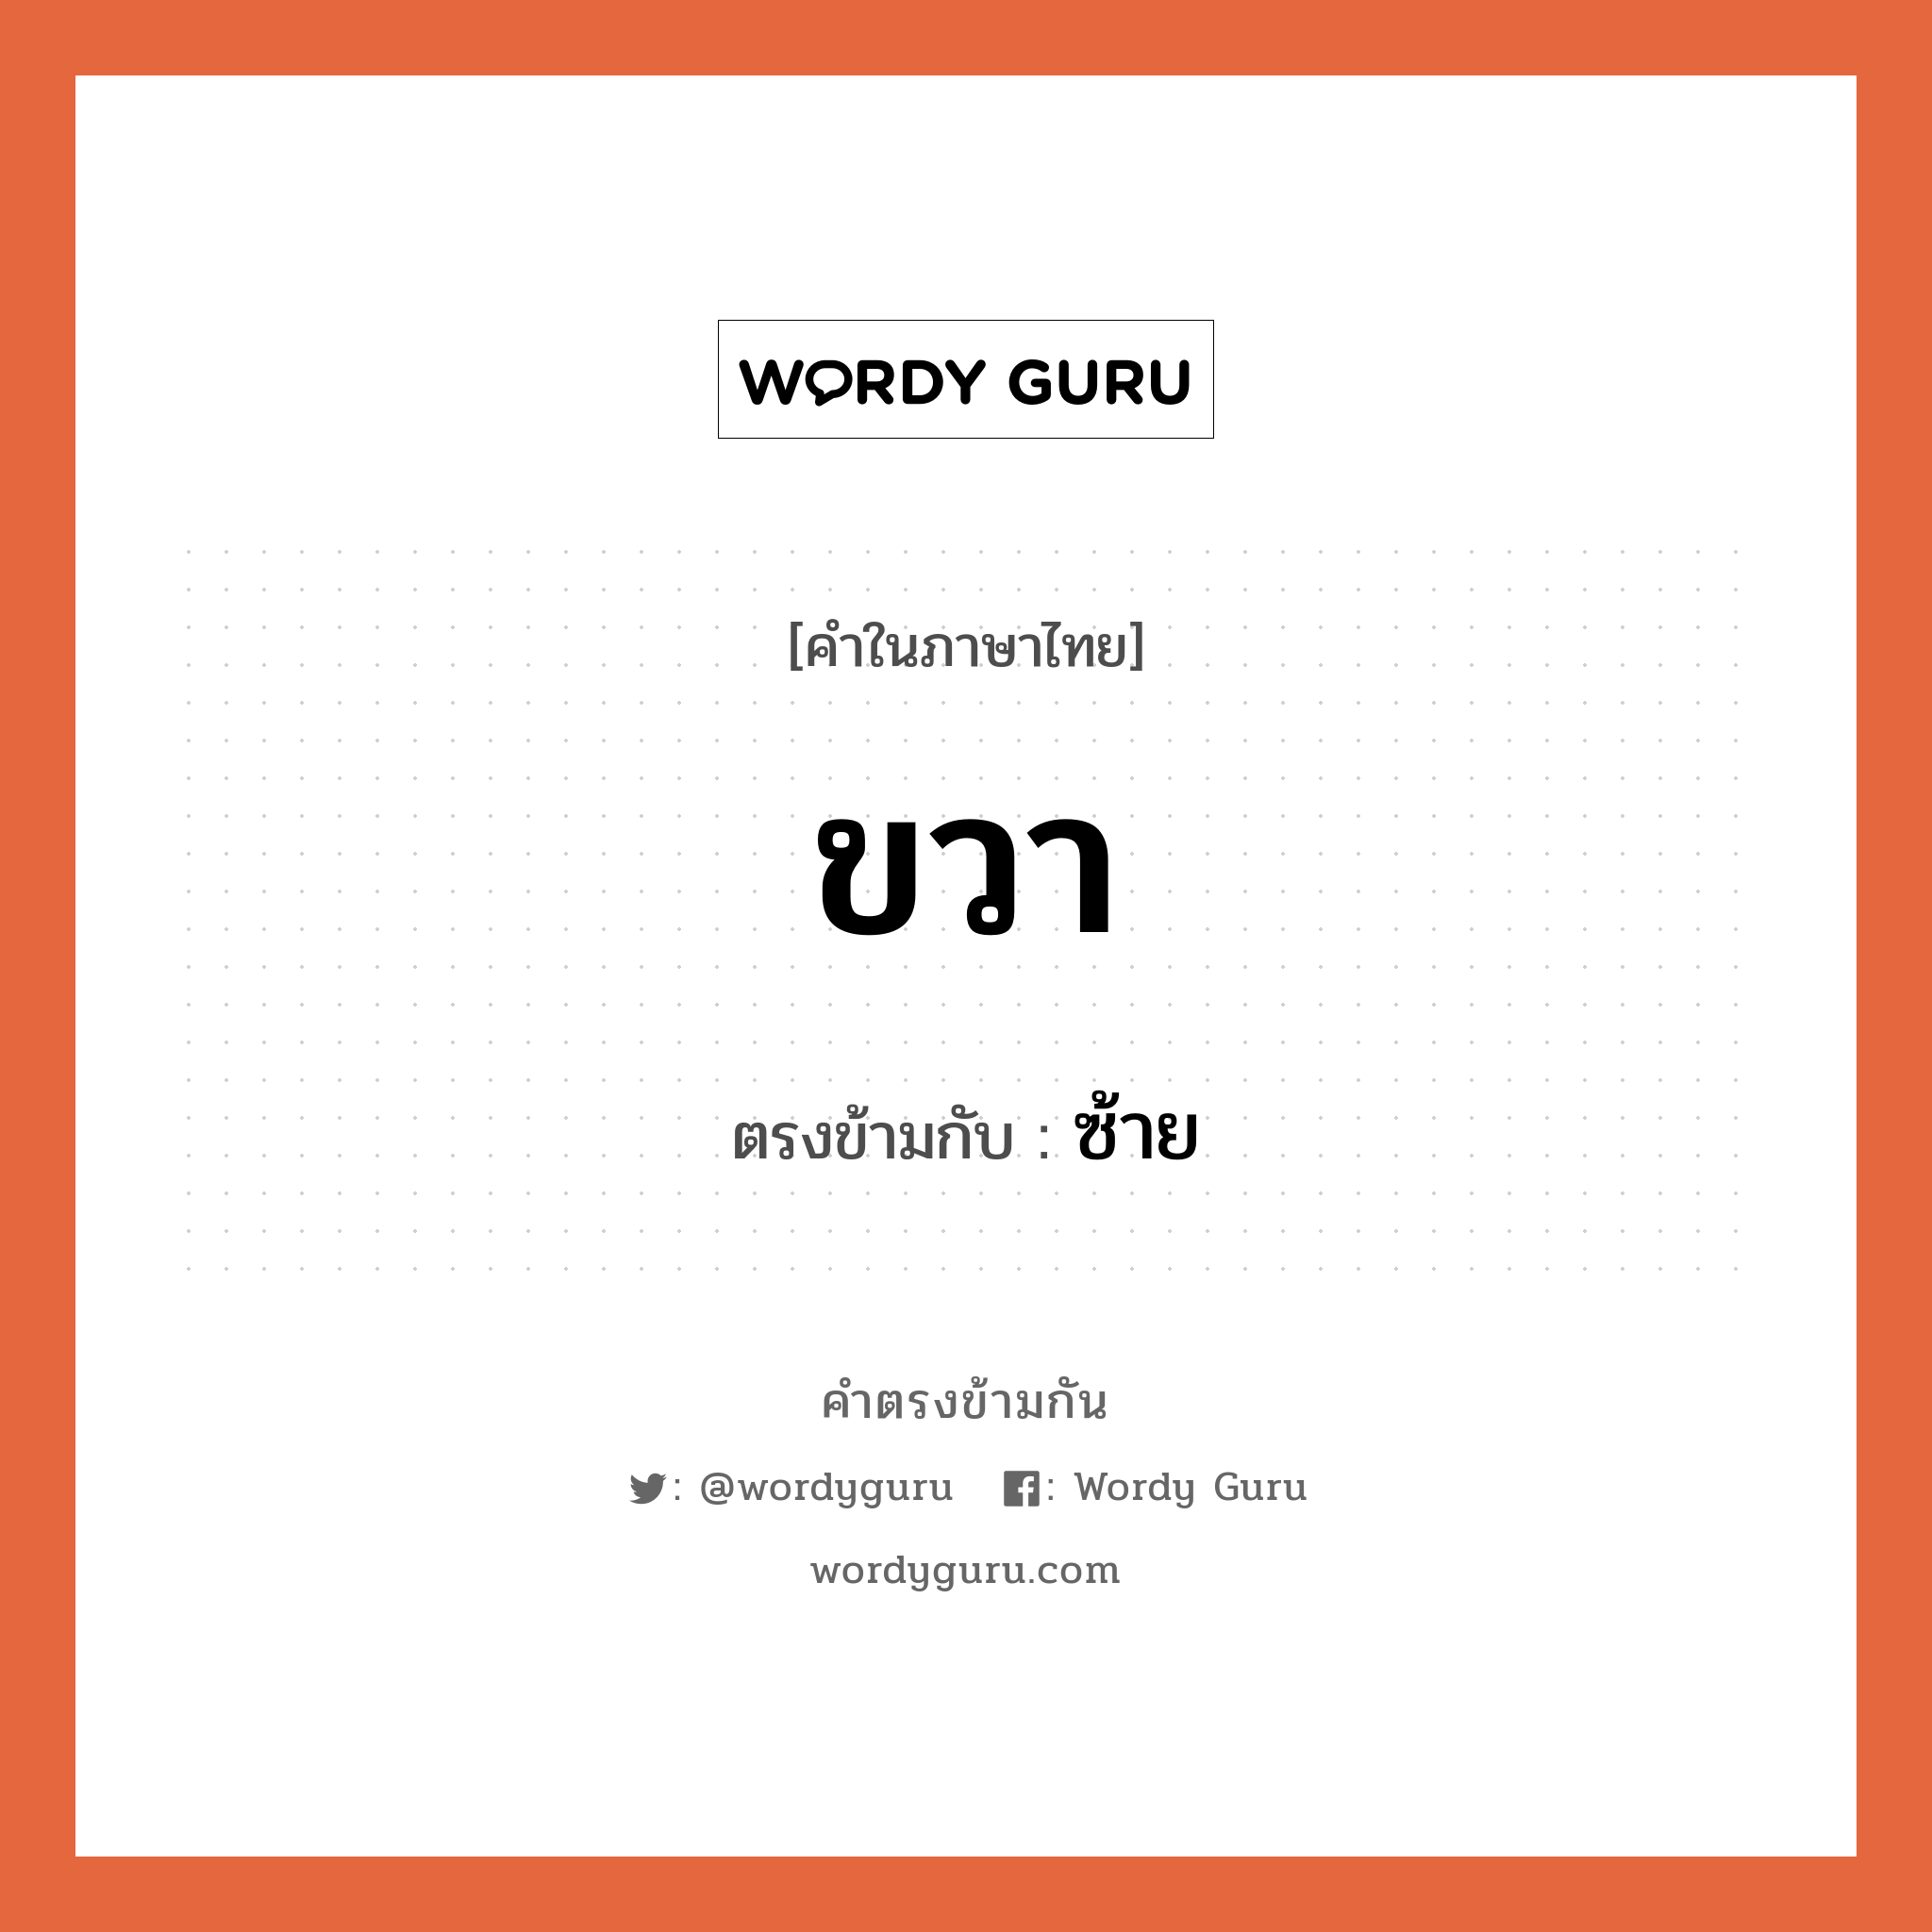 ขวา เป็นคำตรงข้ามกับคำไหนบ้าง?, คำในภาษาไทย ขวา ตรงข้ามกับ ซ้าย หมวด ซ้าย